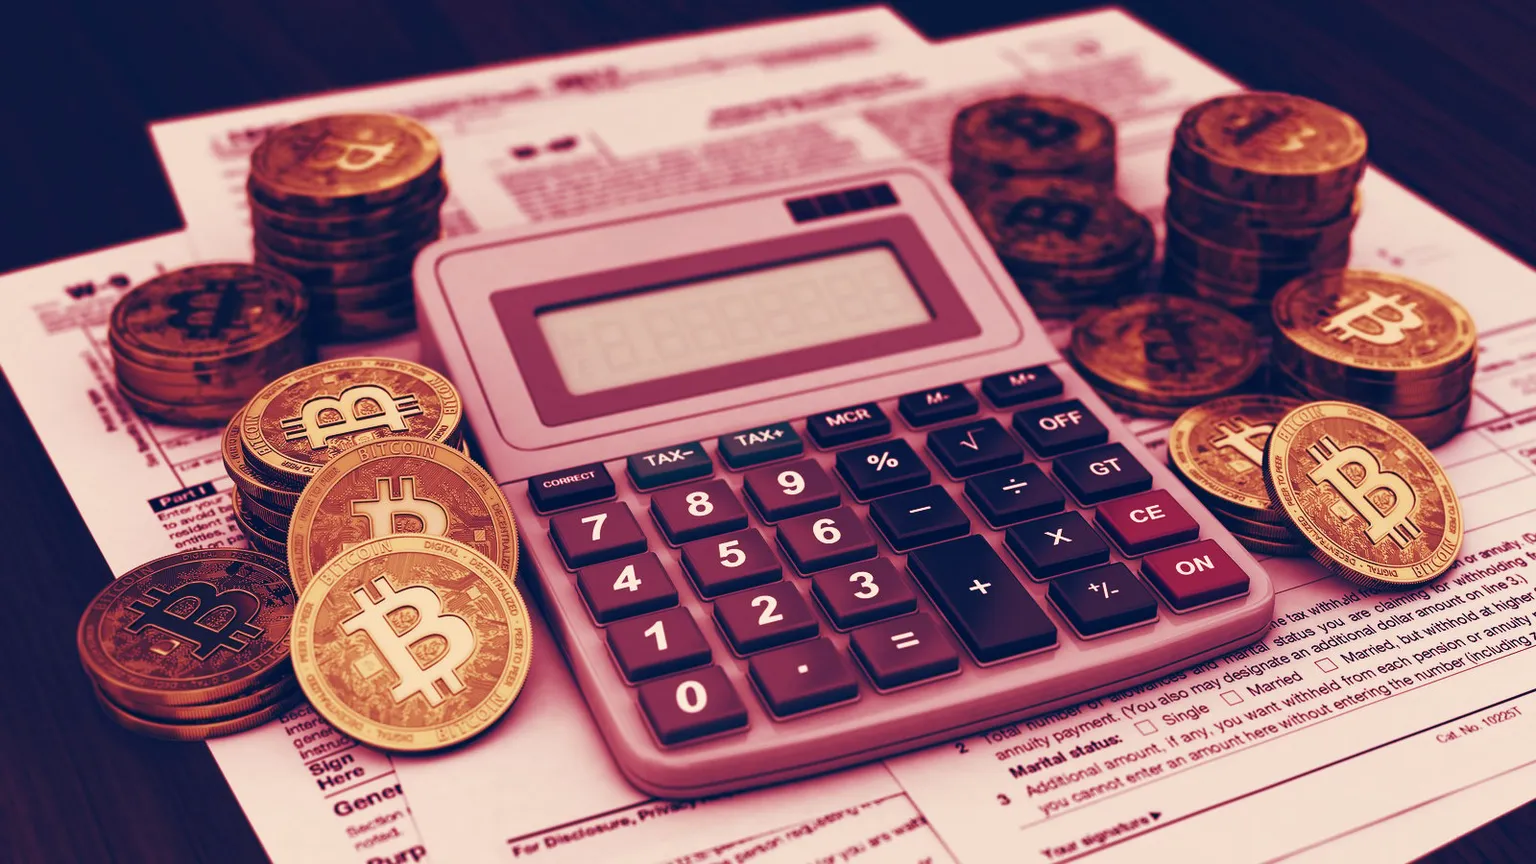 Inversioens en Bitcoin. Imagen: Shutterstock